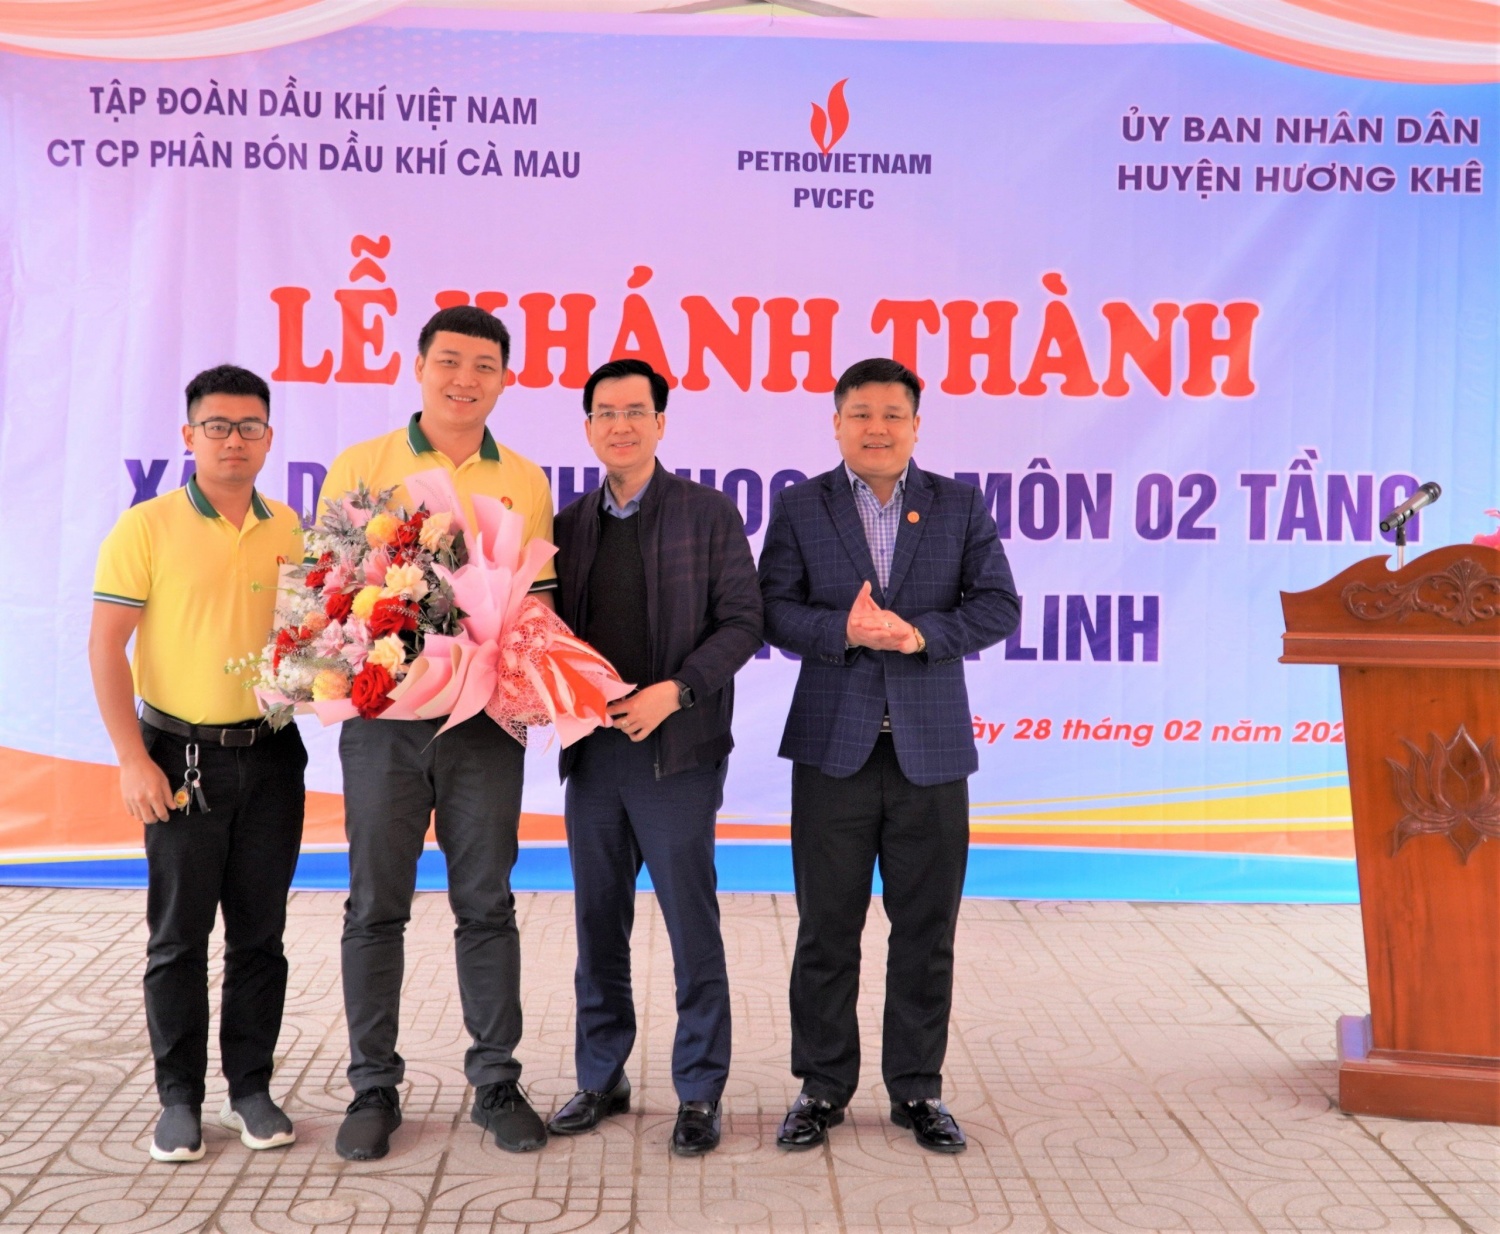 PVCFC tài trợ 5 tỷ đồng xây dựng phòng học tại Hà Tĩnh